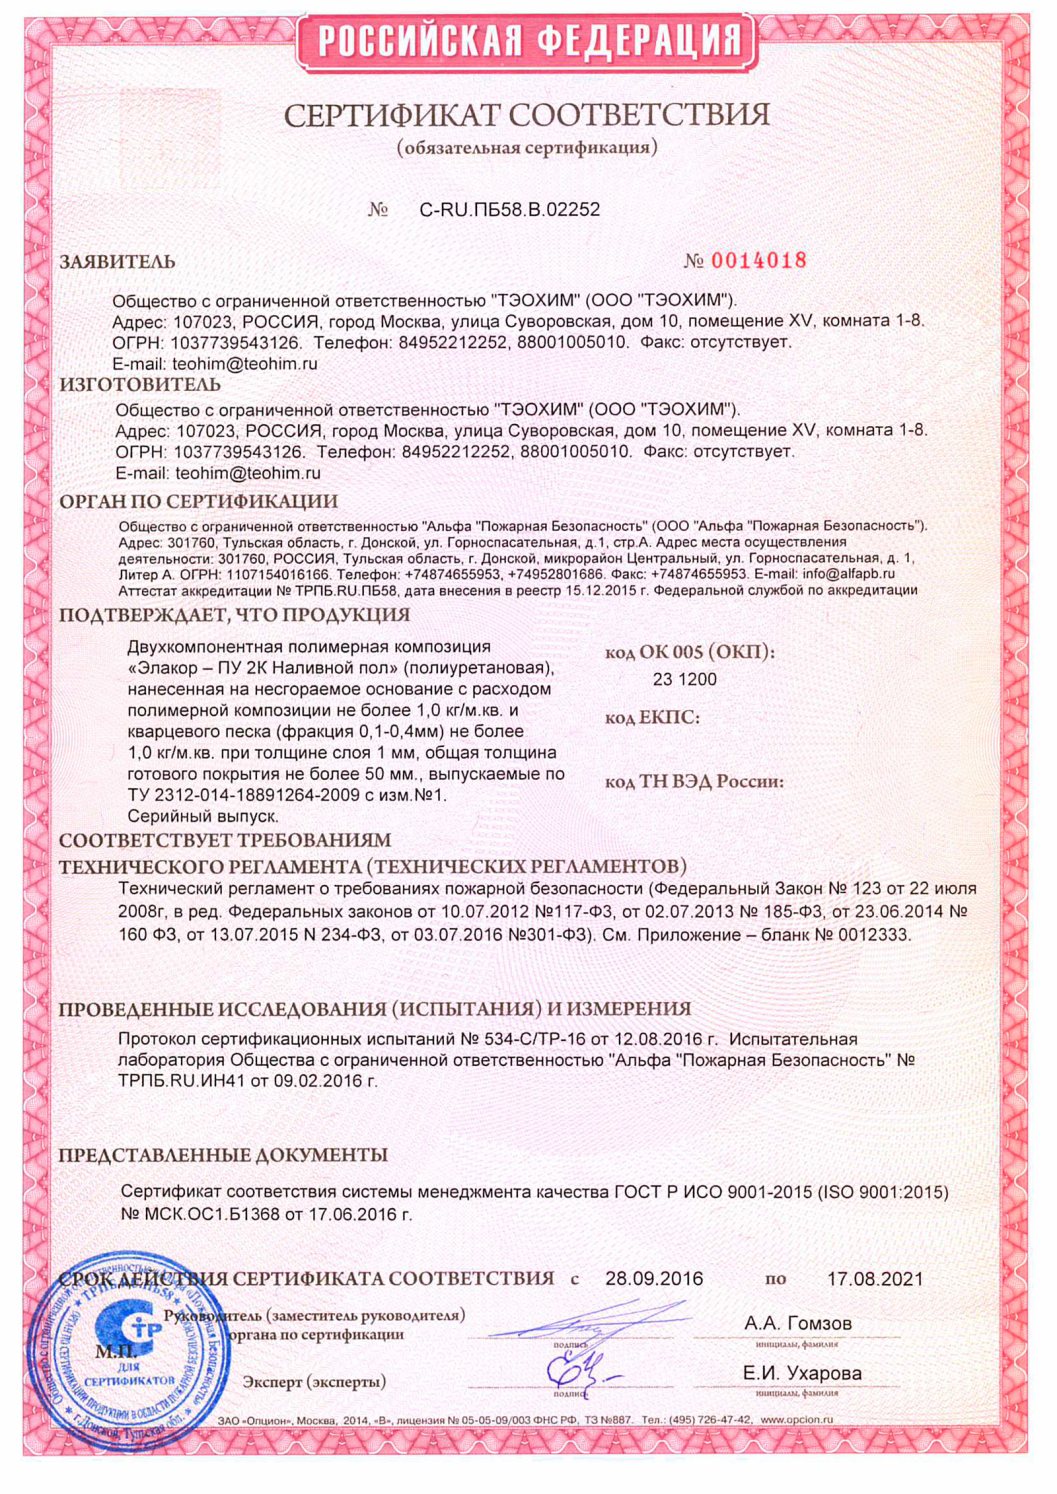 Сертификат пожарной безопасности «Элакор ПУ 2К»